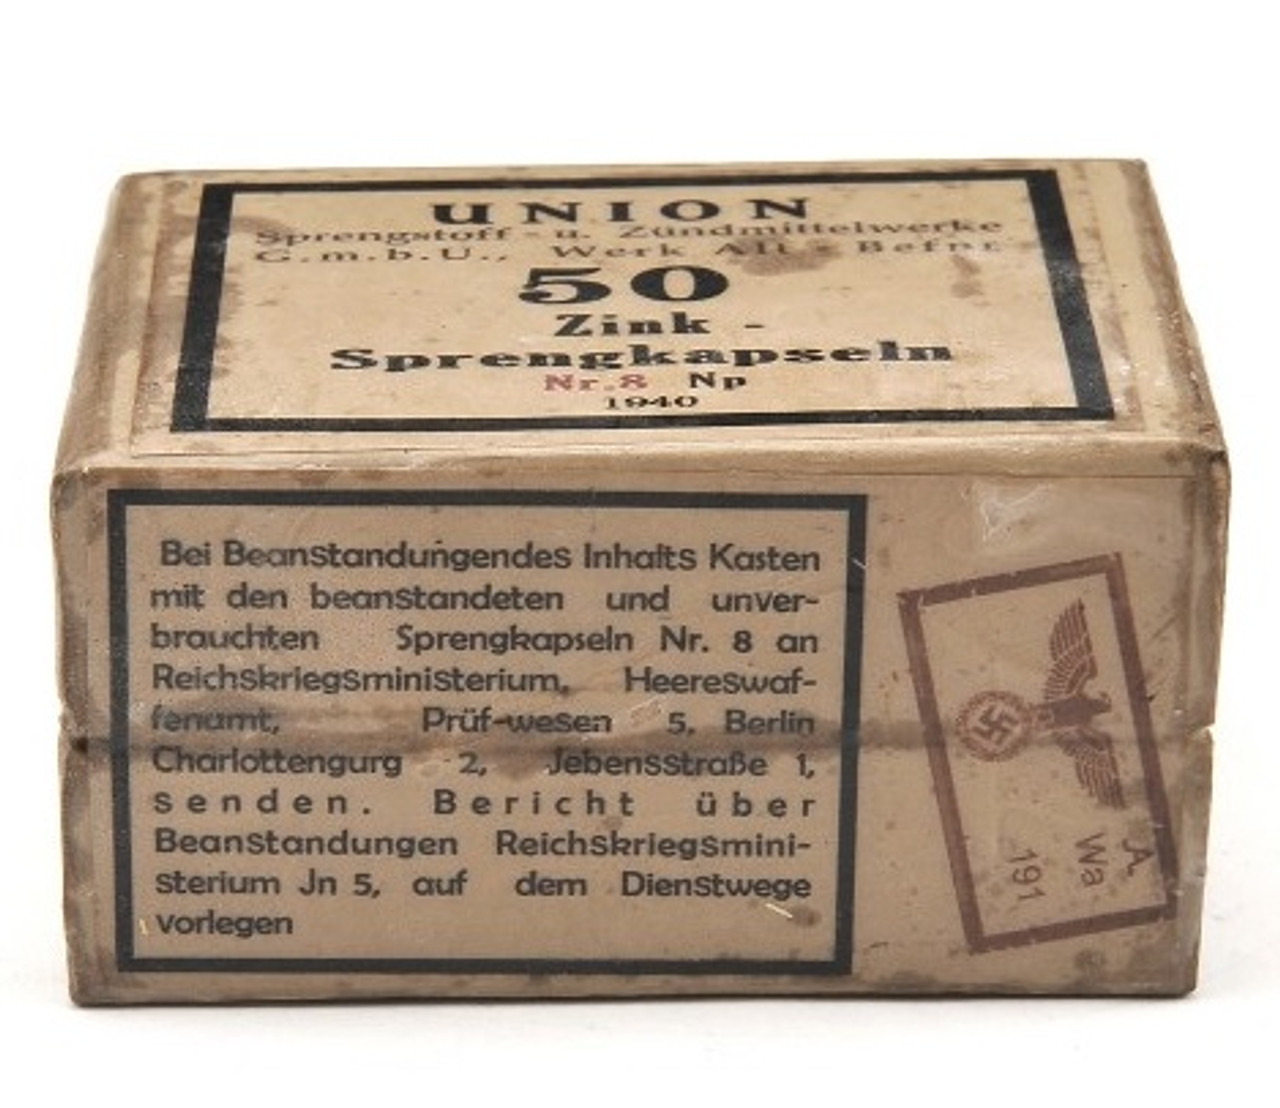 GERMAN WW2 DETONATORS - 50 Ct Sprengkapseln Nr.8 SIMULATED BOX